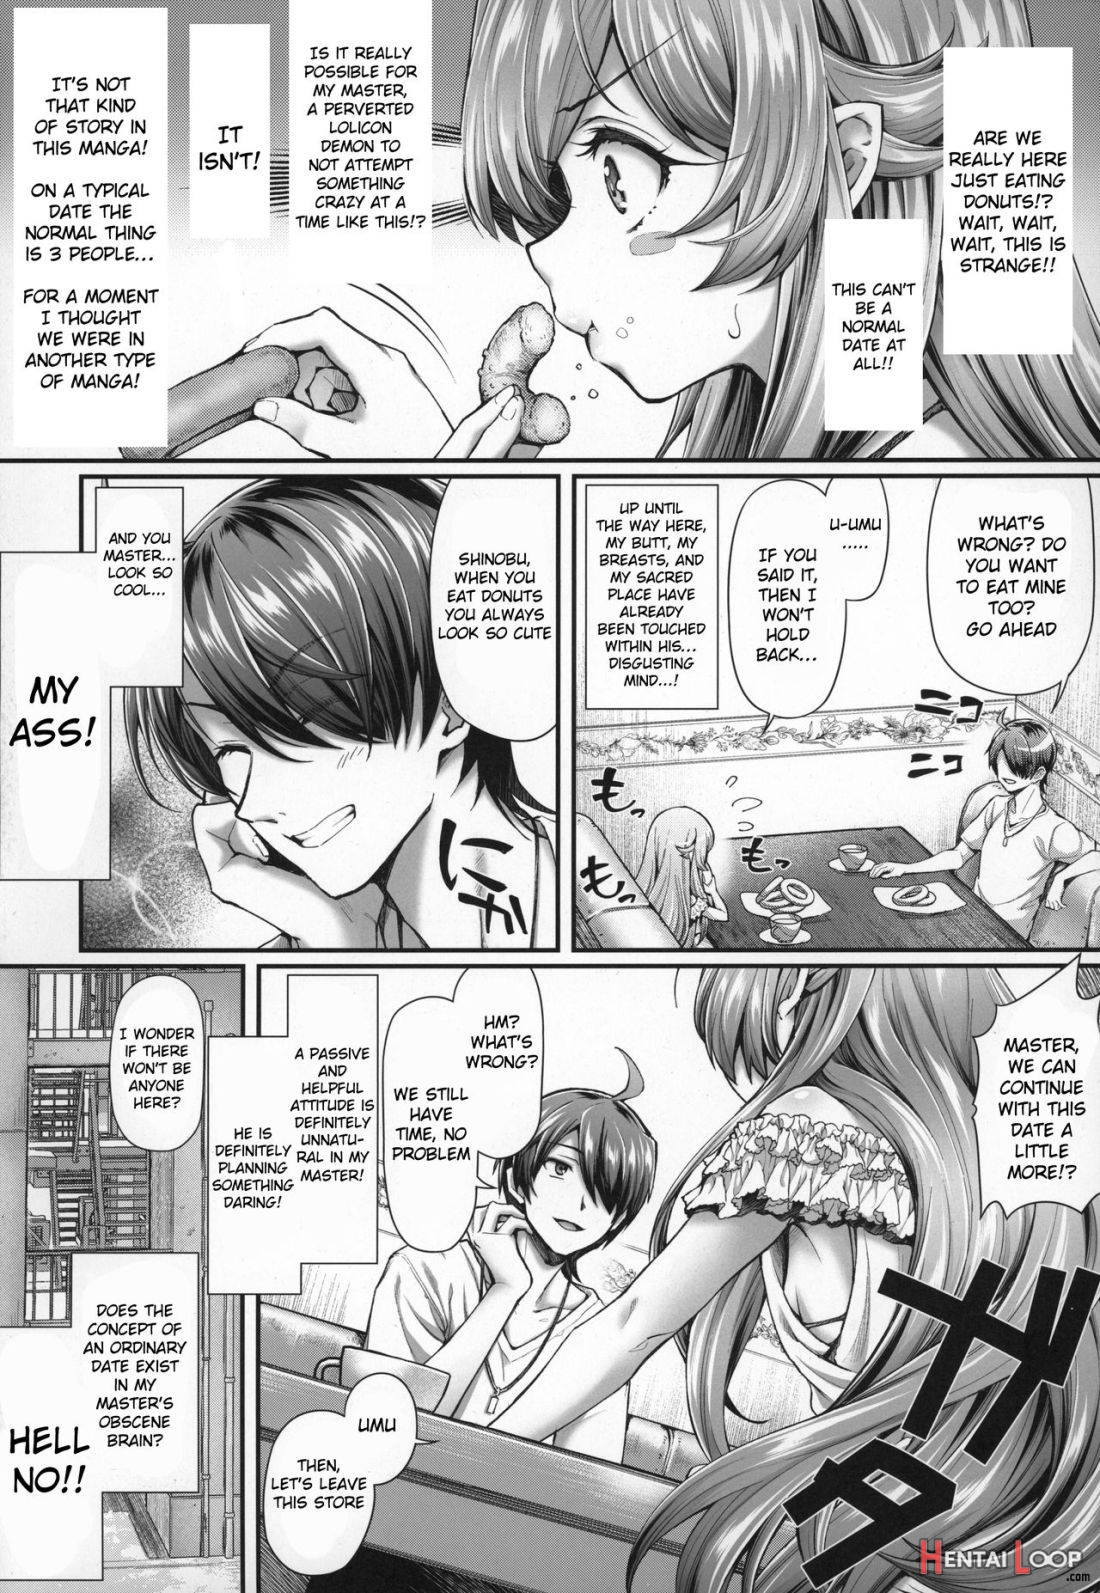 Pachimonogatari Part 18: Shinobu Date page 5